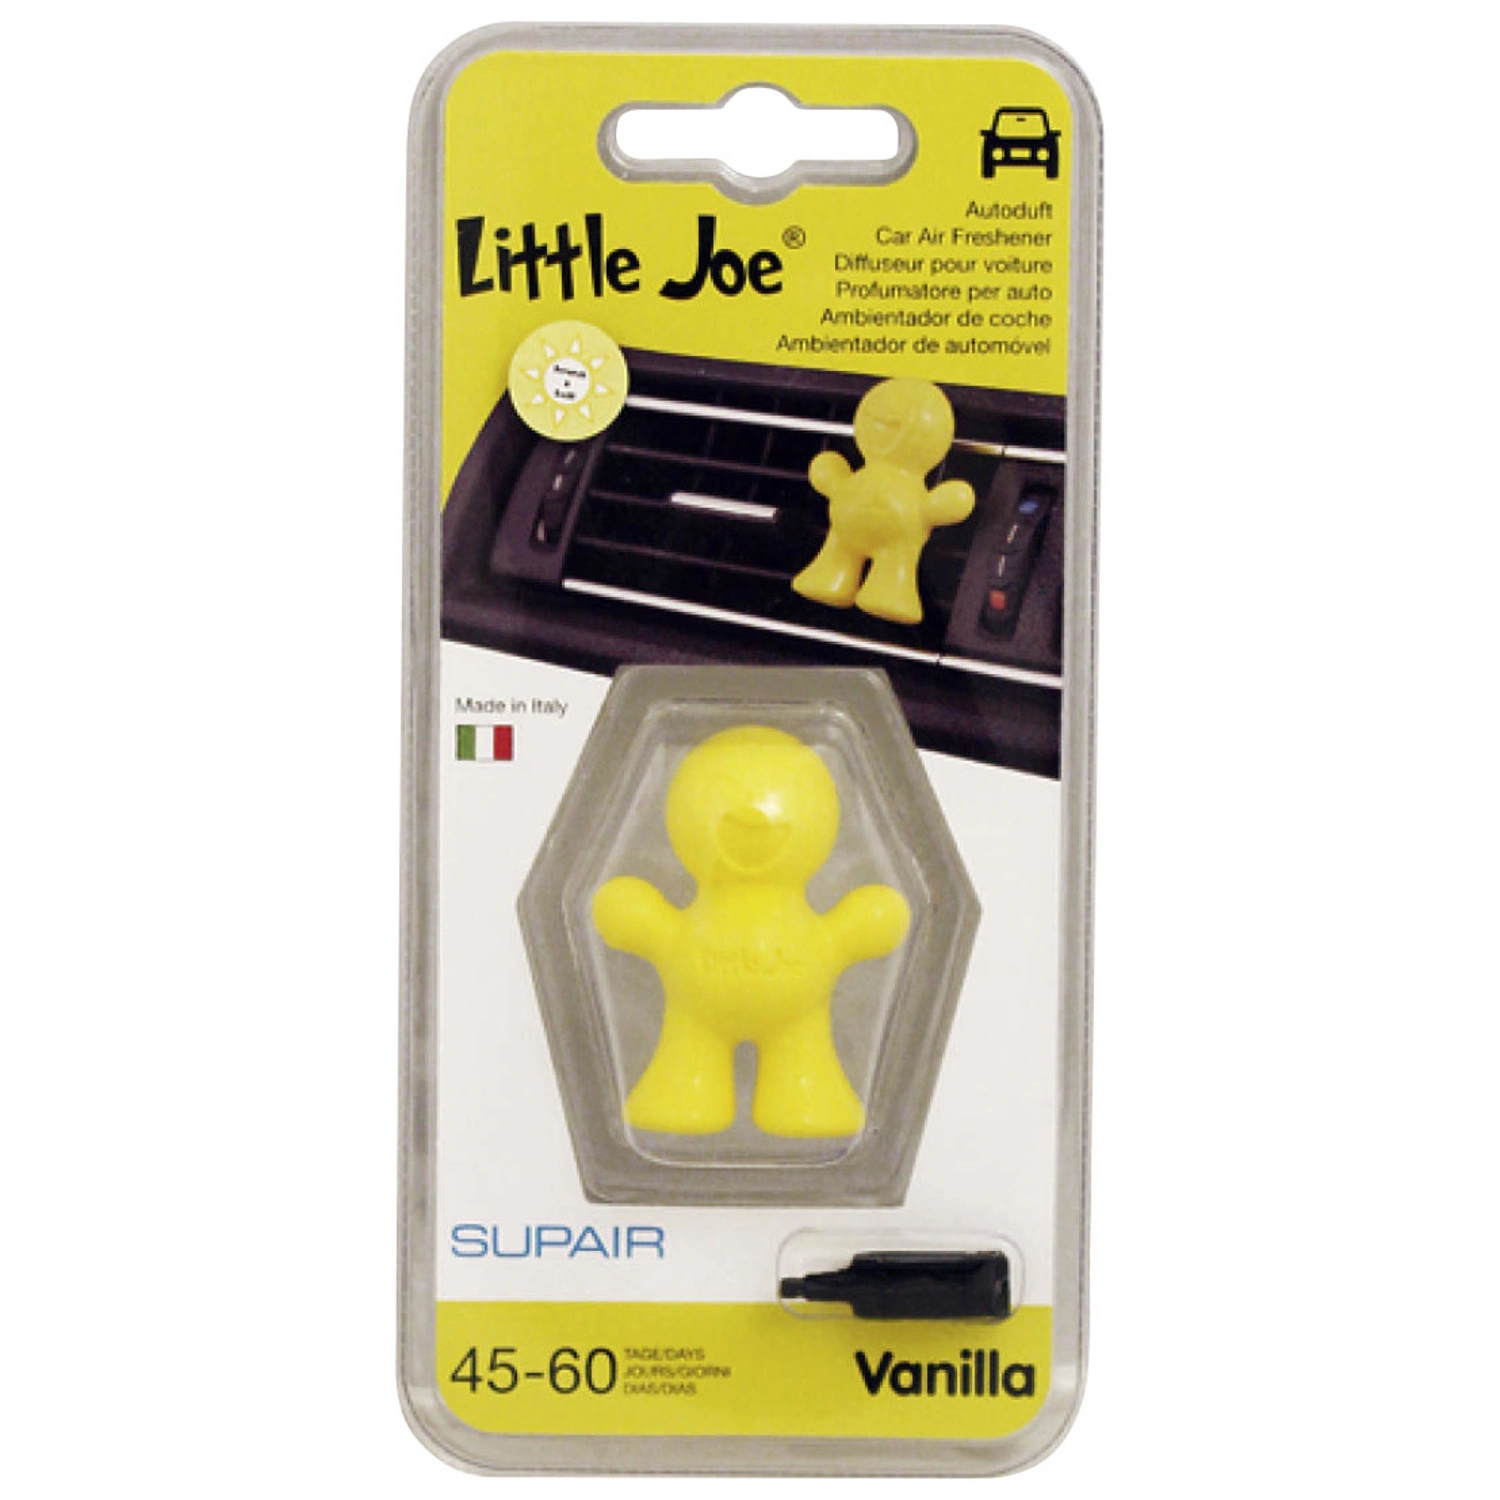 Little Joe - Lufterfrischer fürs Auto - Autoduft - Fruit